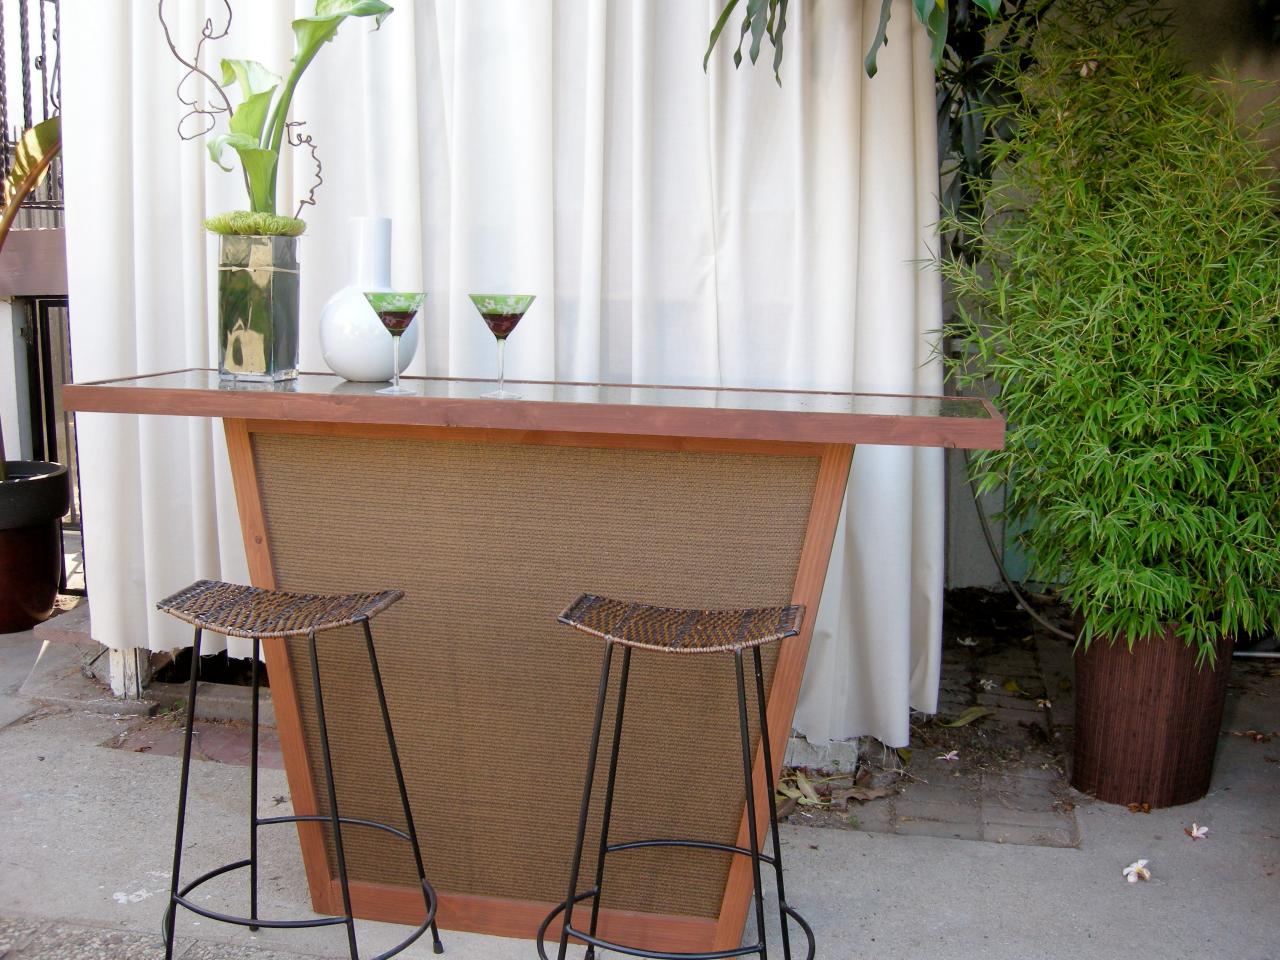 Build An Outdoor Bar With A Pebble Top, Outdoor Bar Table Top Ideas